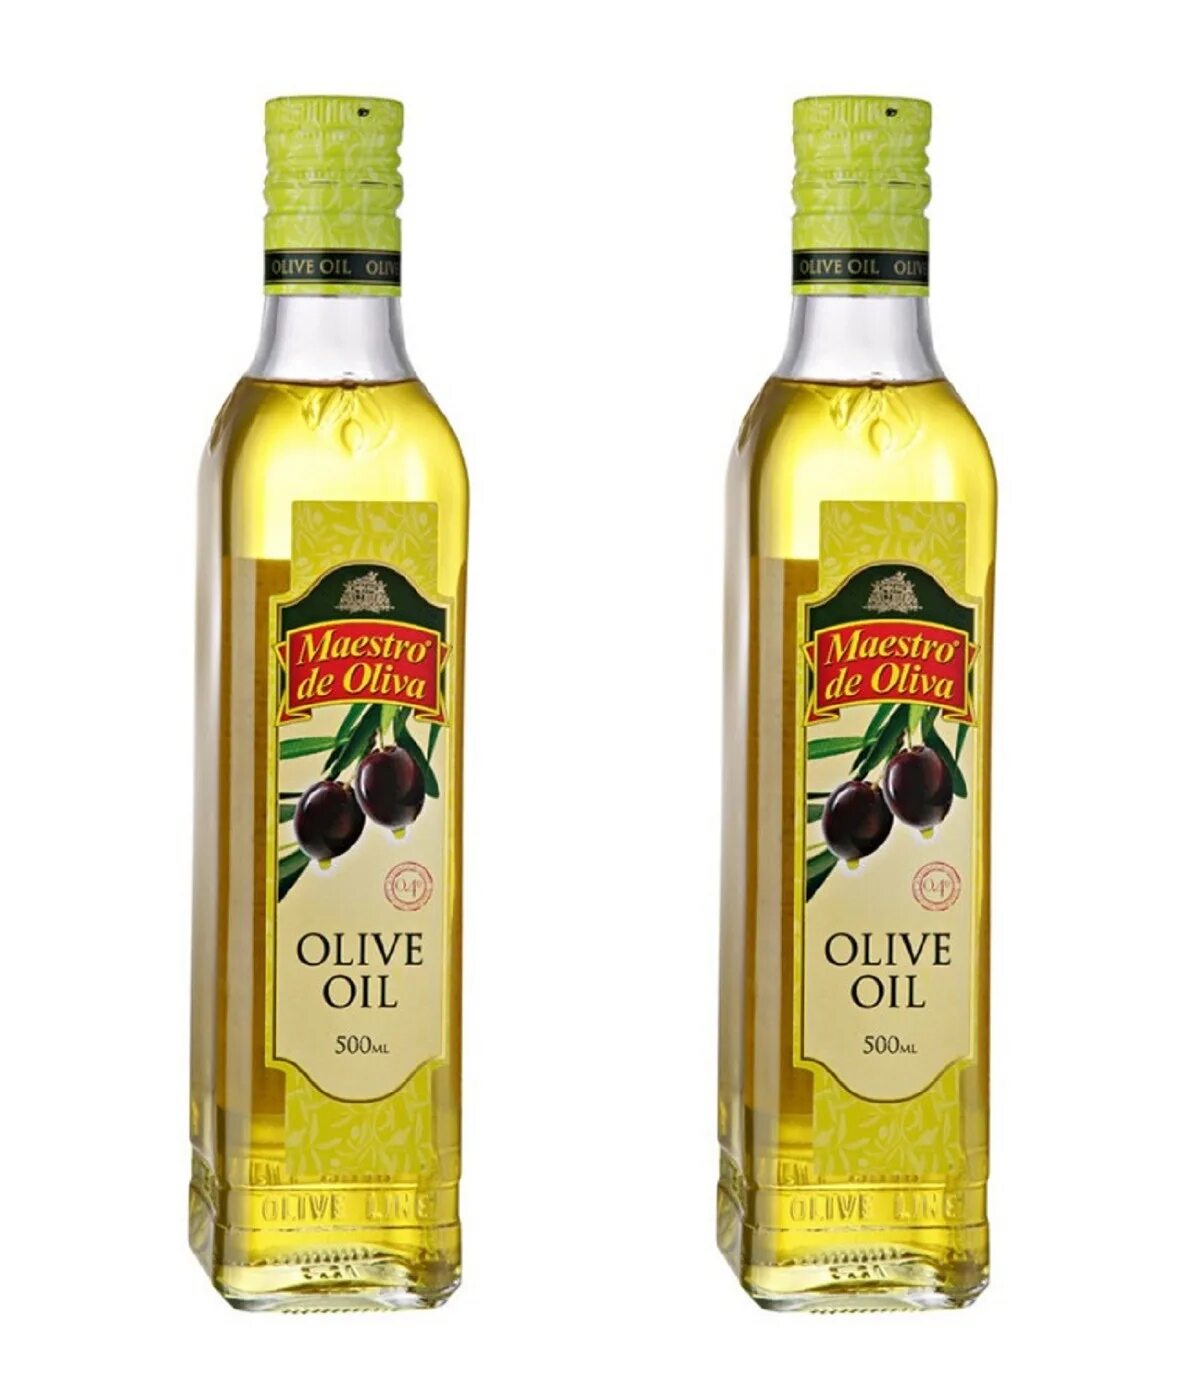 Масло оливковое Maestro de Oliva Extra Virgin нерафинированное, 1 л. Olive Oil нерафинированное масло оливковое. Масло оливковое нерафинированное первого холодного отжима. Olive Oil масло оливковое рафинированное и нерафинированное.